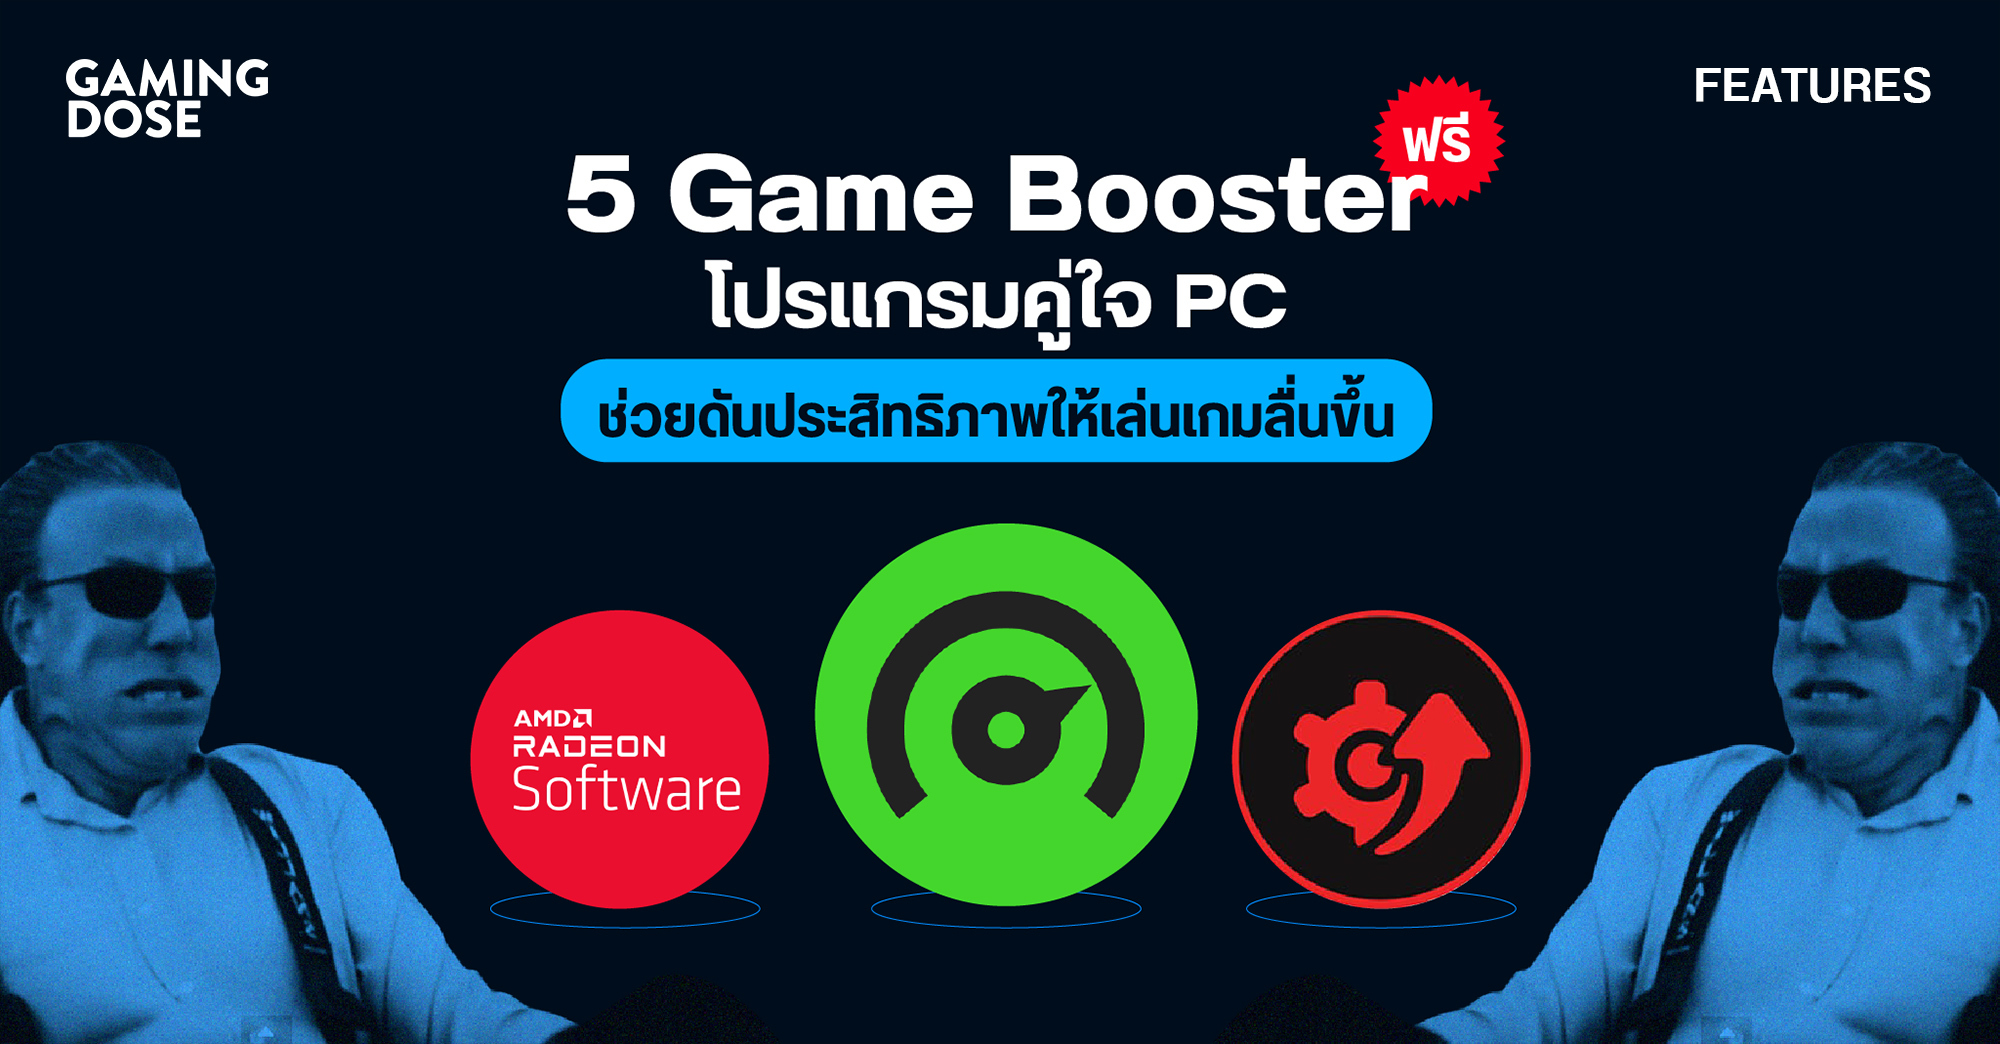 5 Game Booster ฟรี โปรแกรมคู่ใจ Pc ช่วยดันประสิทธิภาพให้เล่นเกมลื่นขึ้น |  Gamingdose